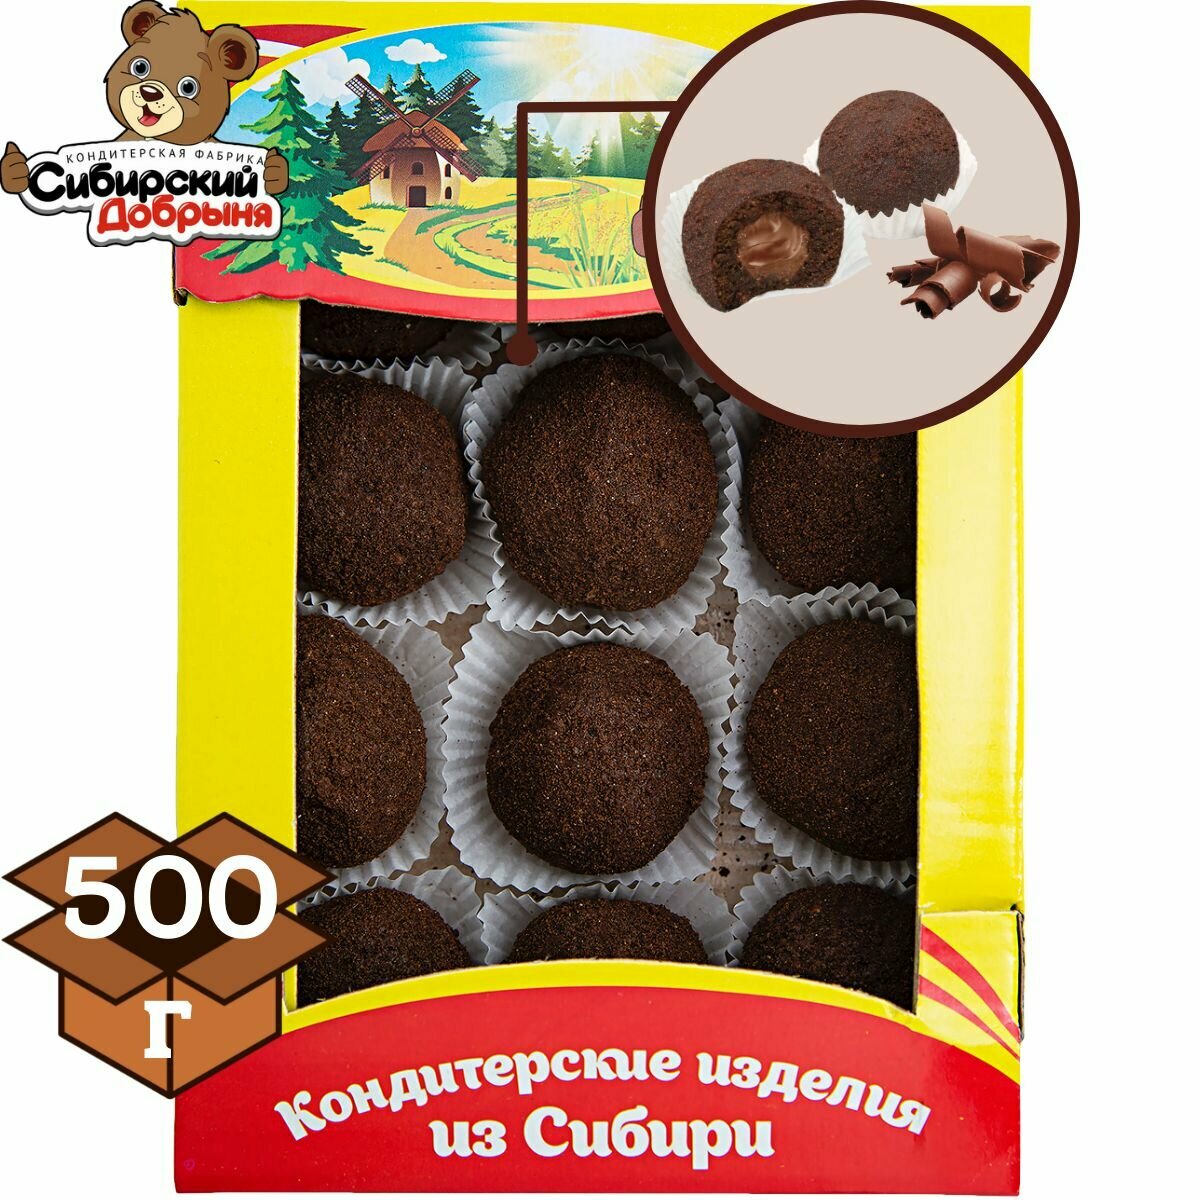 Пирожные крошковые шароцветики с какао и начинкой со вкусом шоколада, 500 грамм , мишка в малиннике , Сибирский добрыня